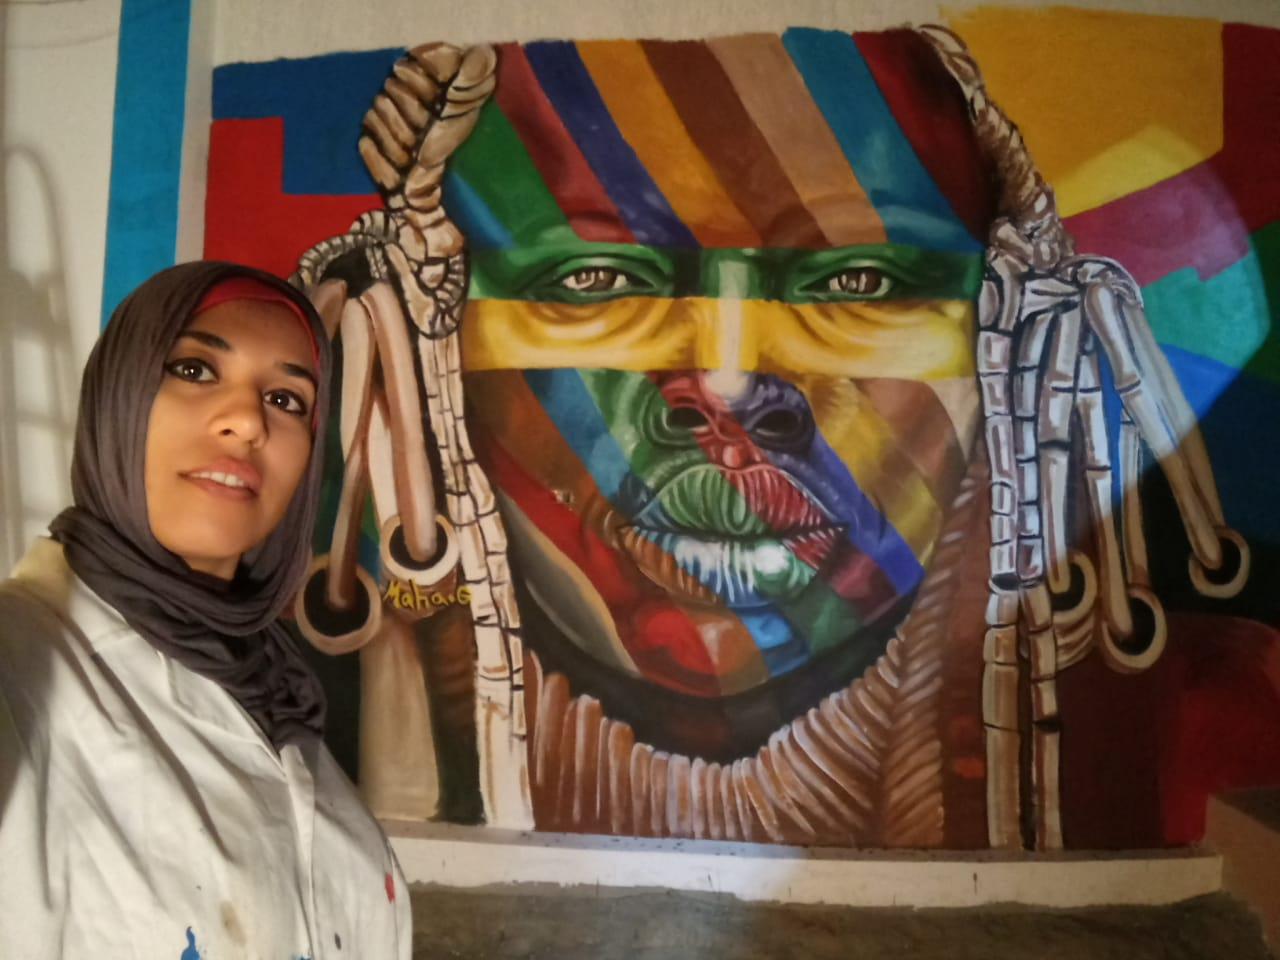   نساء يطرقن باب النجاح (17) مها جميل فنانة الجرافيتى التى حولت جدران أسوان إلى قصص صاخبة